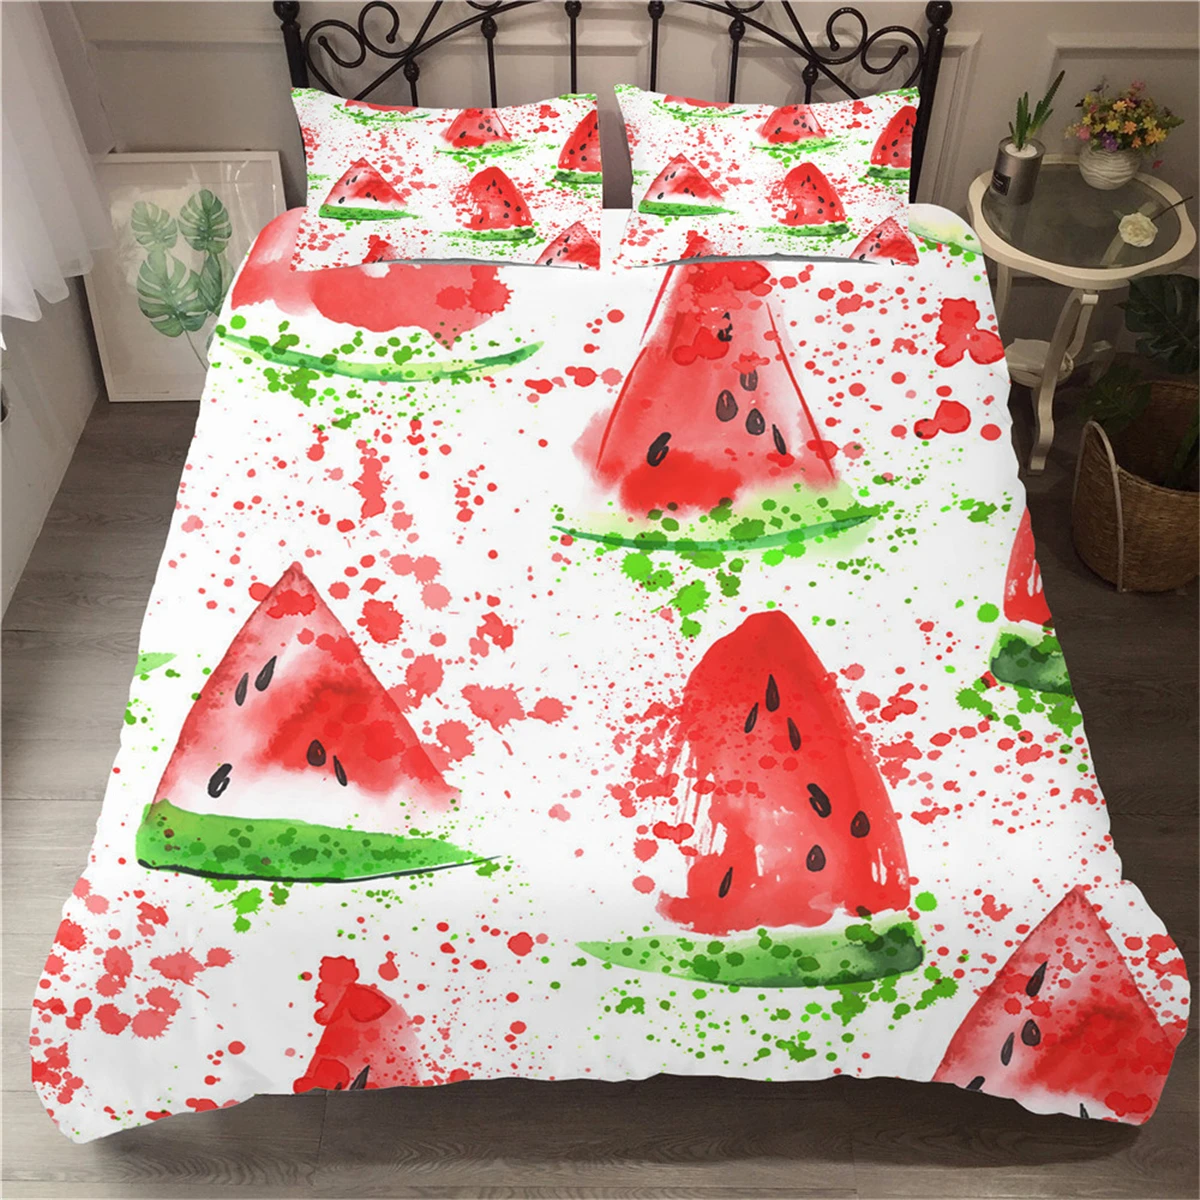 Watermeloen Fruit Doodle Beddengoed Kids Set Enkel Dubbel Bed Cover Rood Groen Sprei Room Decor Kussensloop|Bedding Sets| - AliExpress